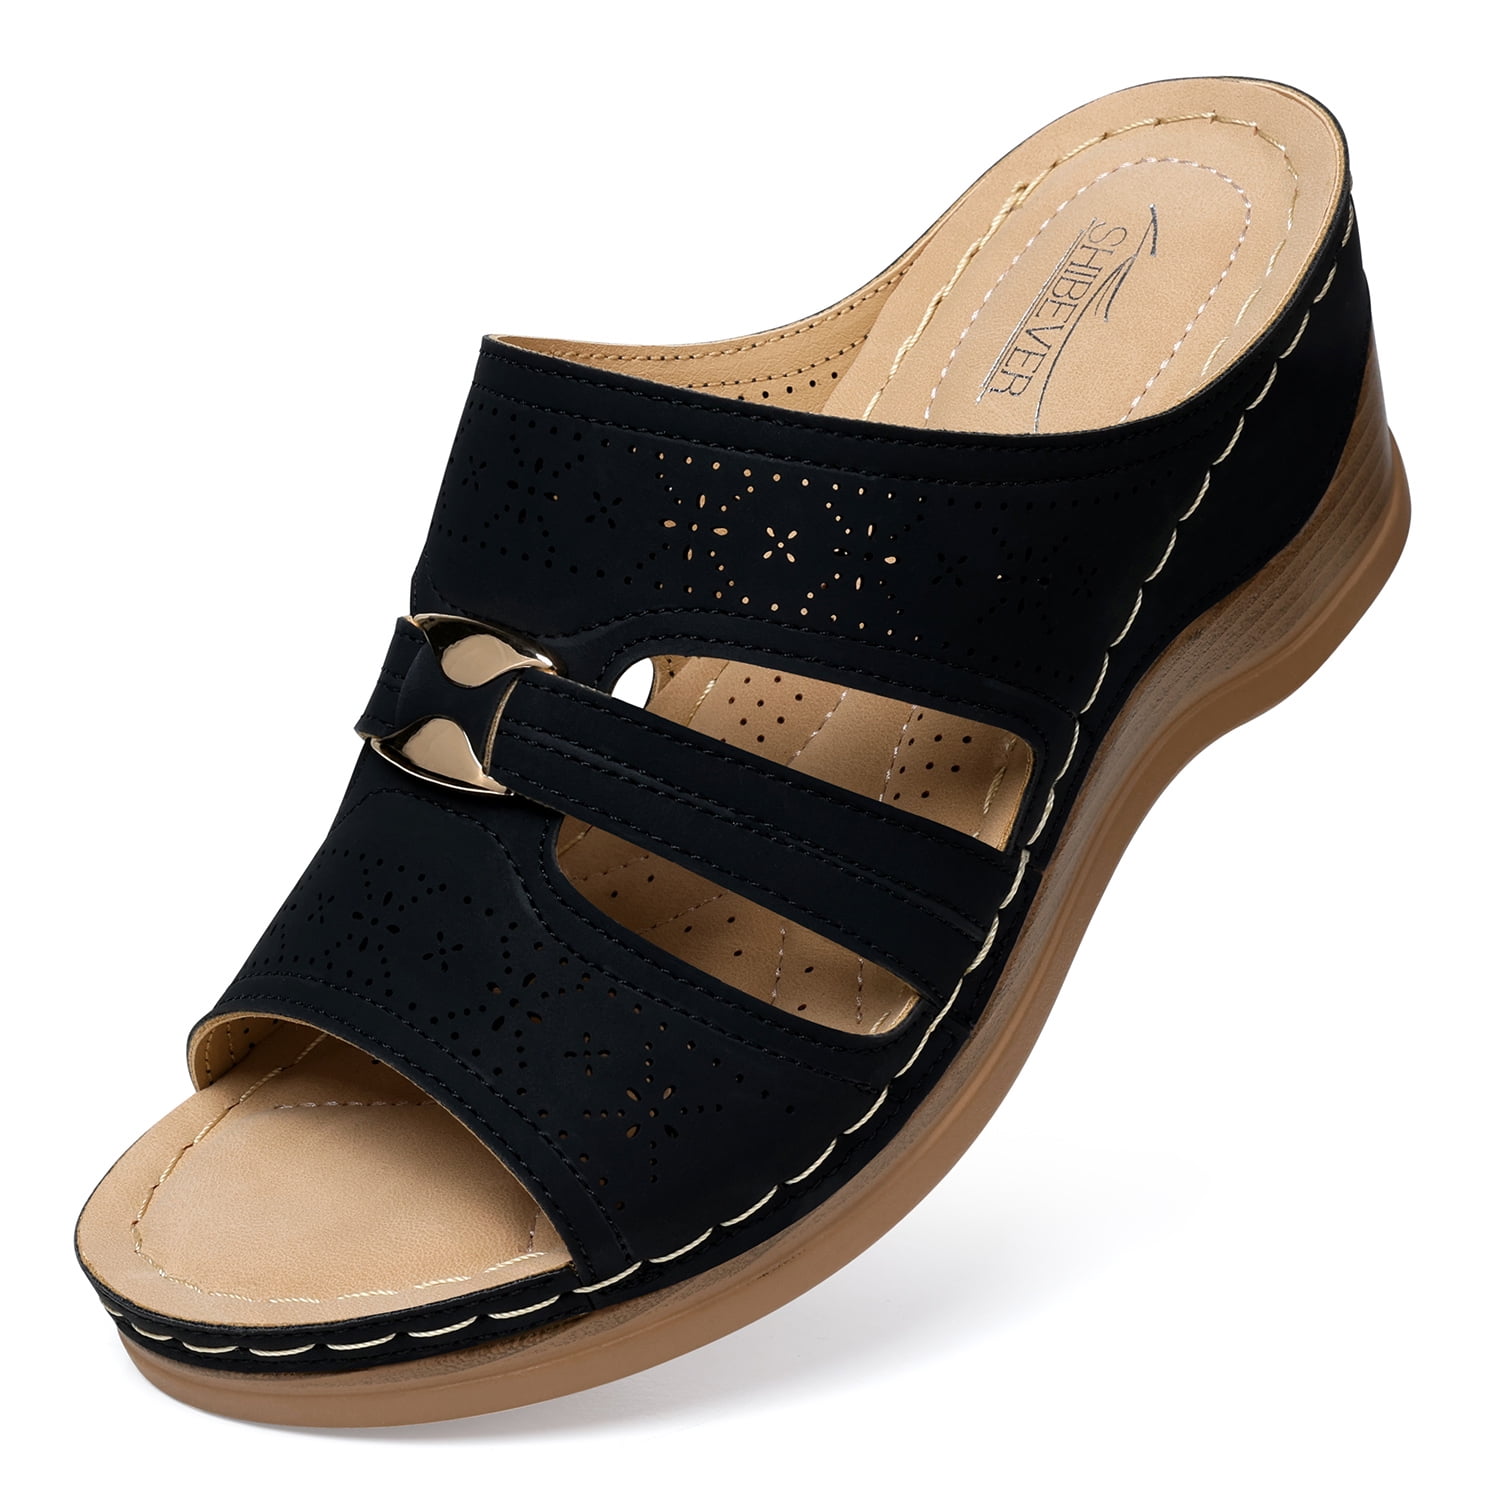 SHIBEVER Women's Wedge Sandals Open Toe Summer Black Wedge Sandal for ...